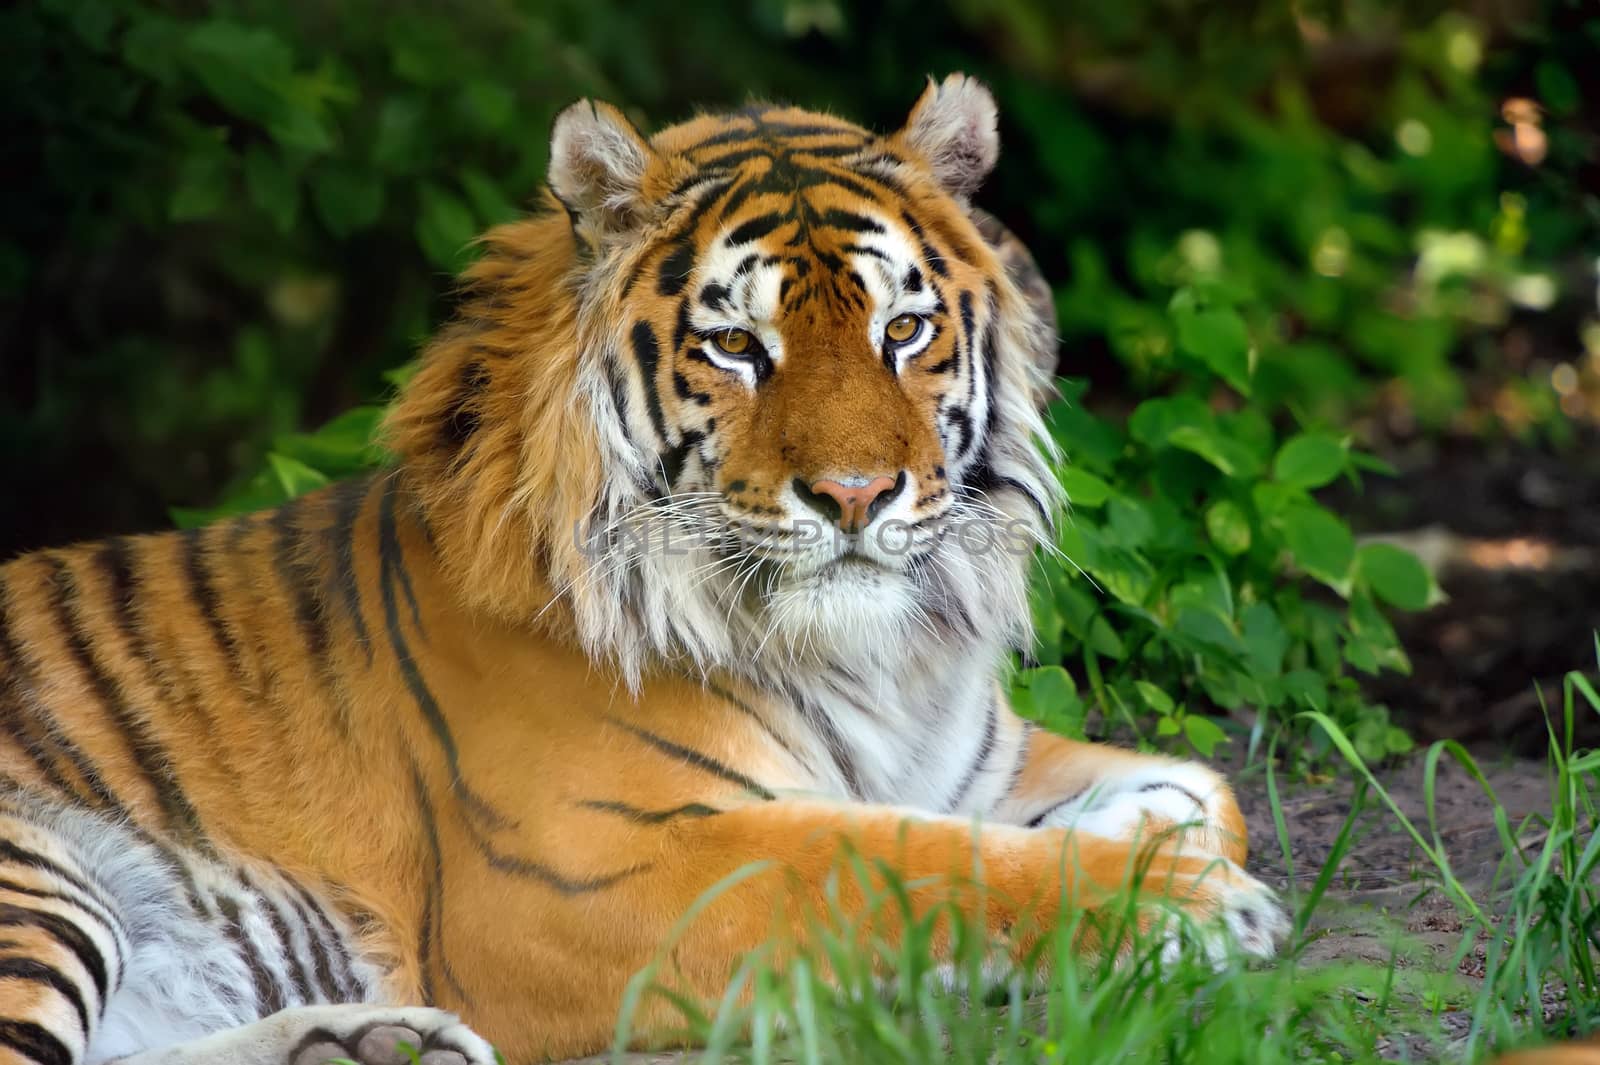 Tiger by byrdyak